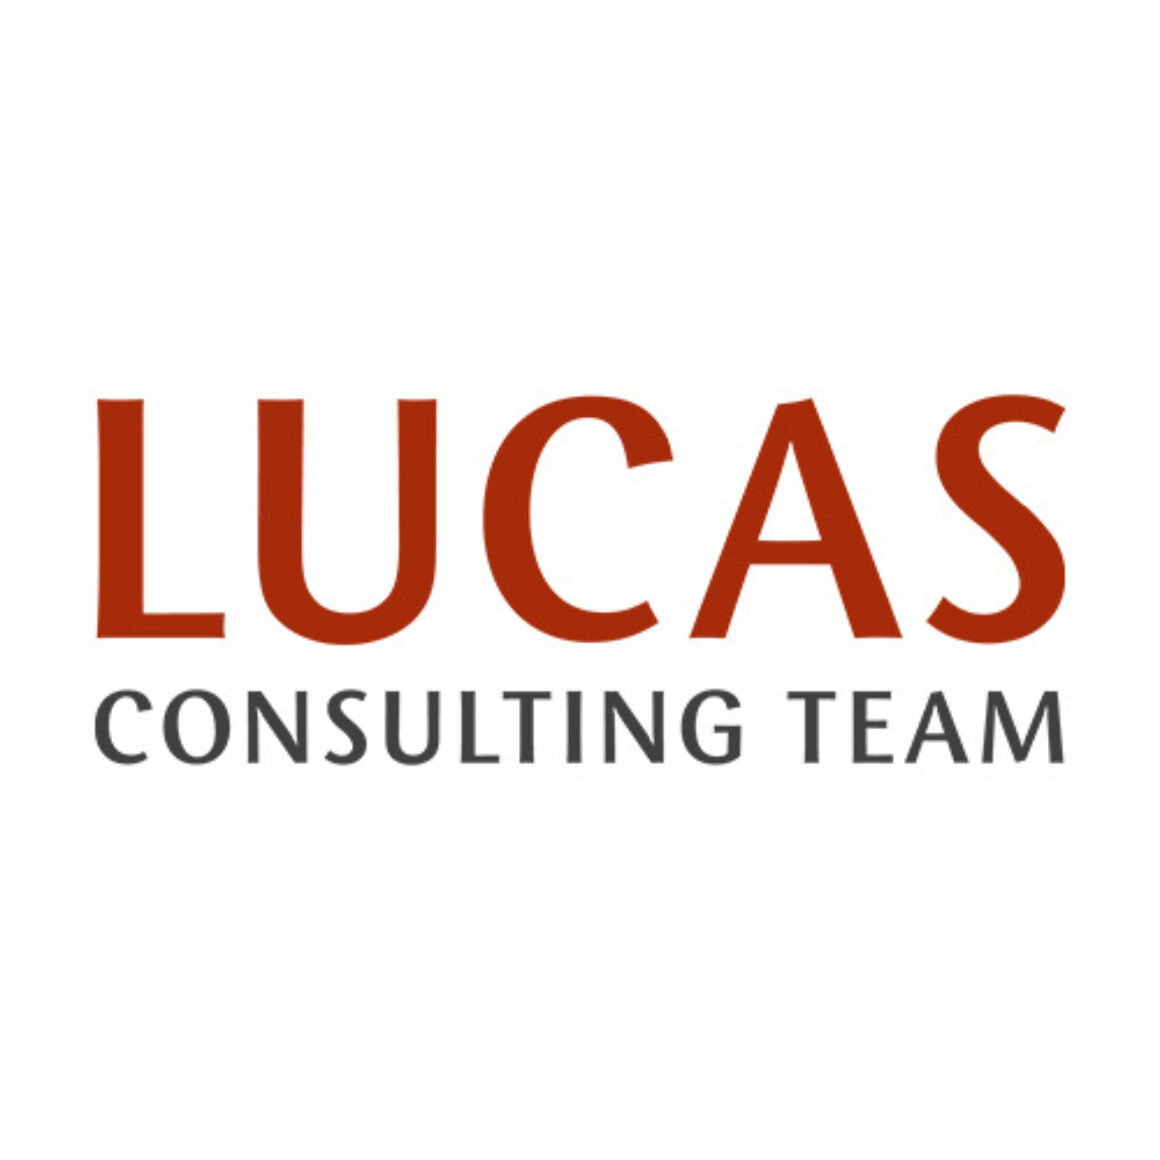 Lucas Consulting